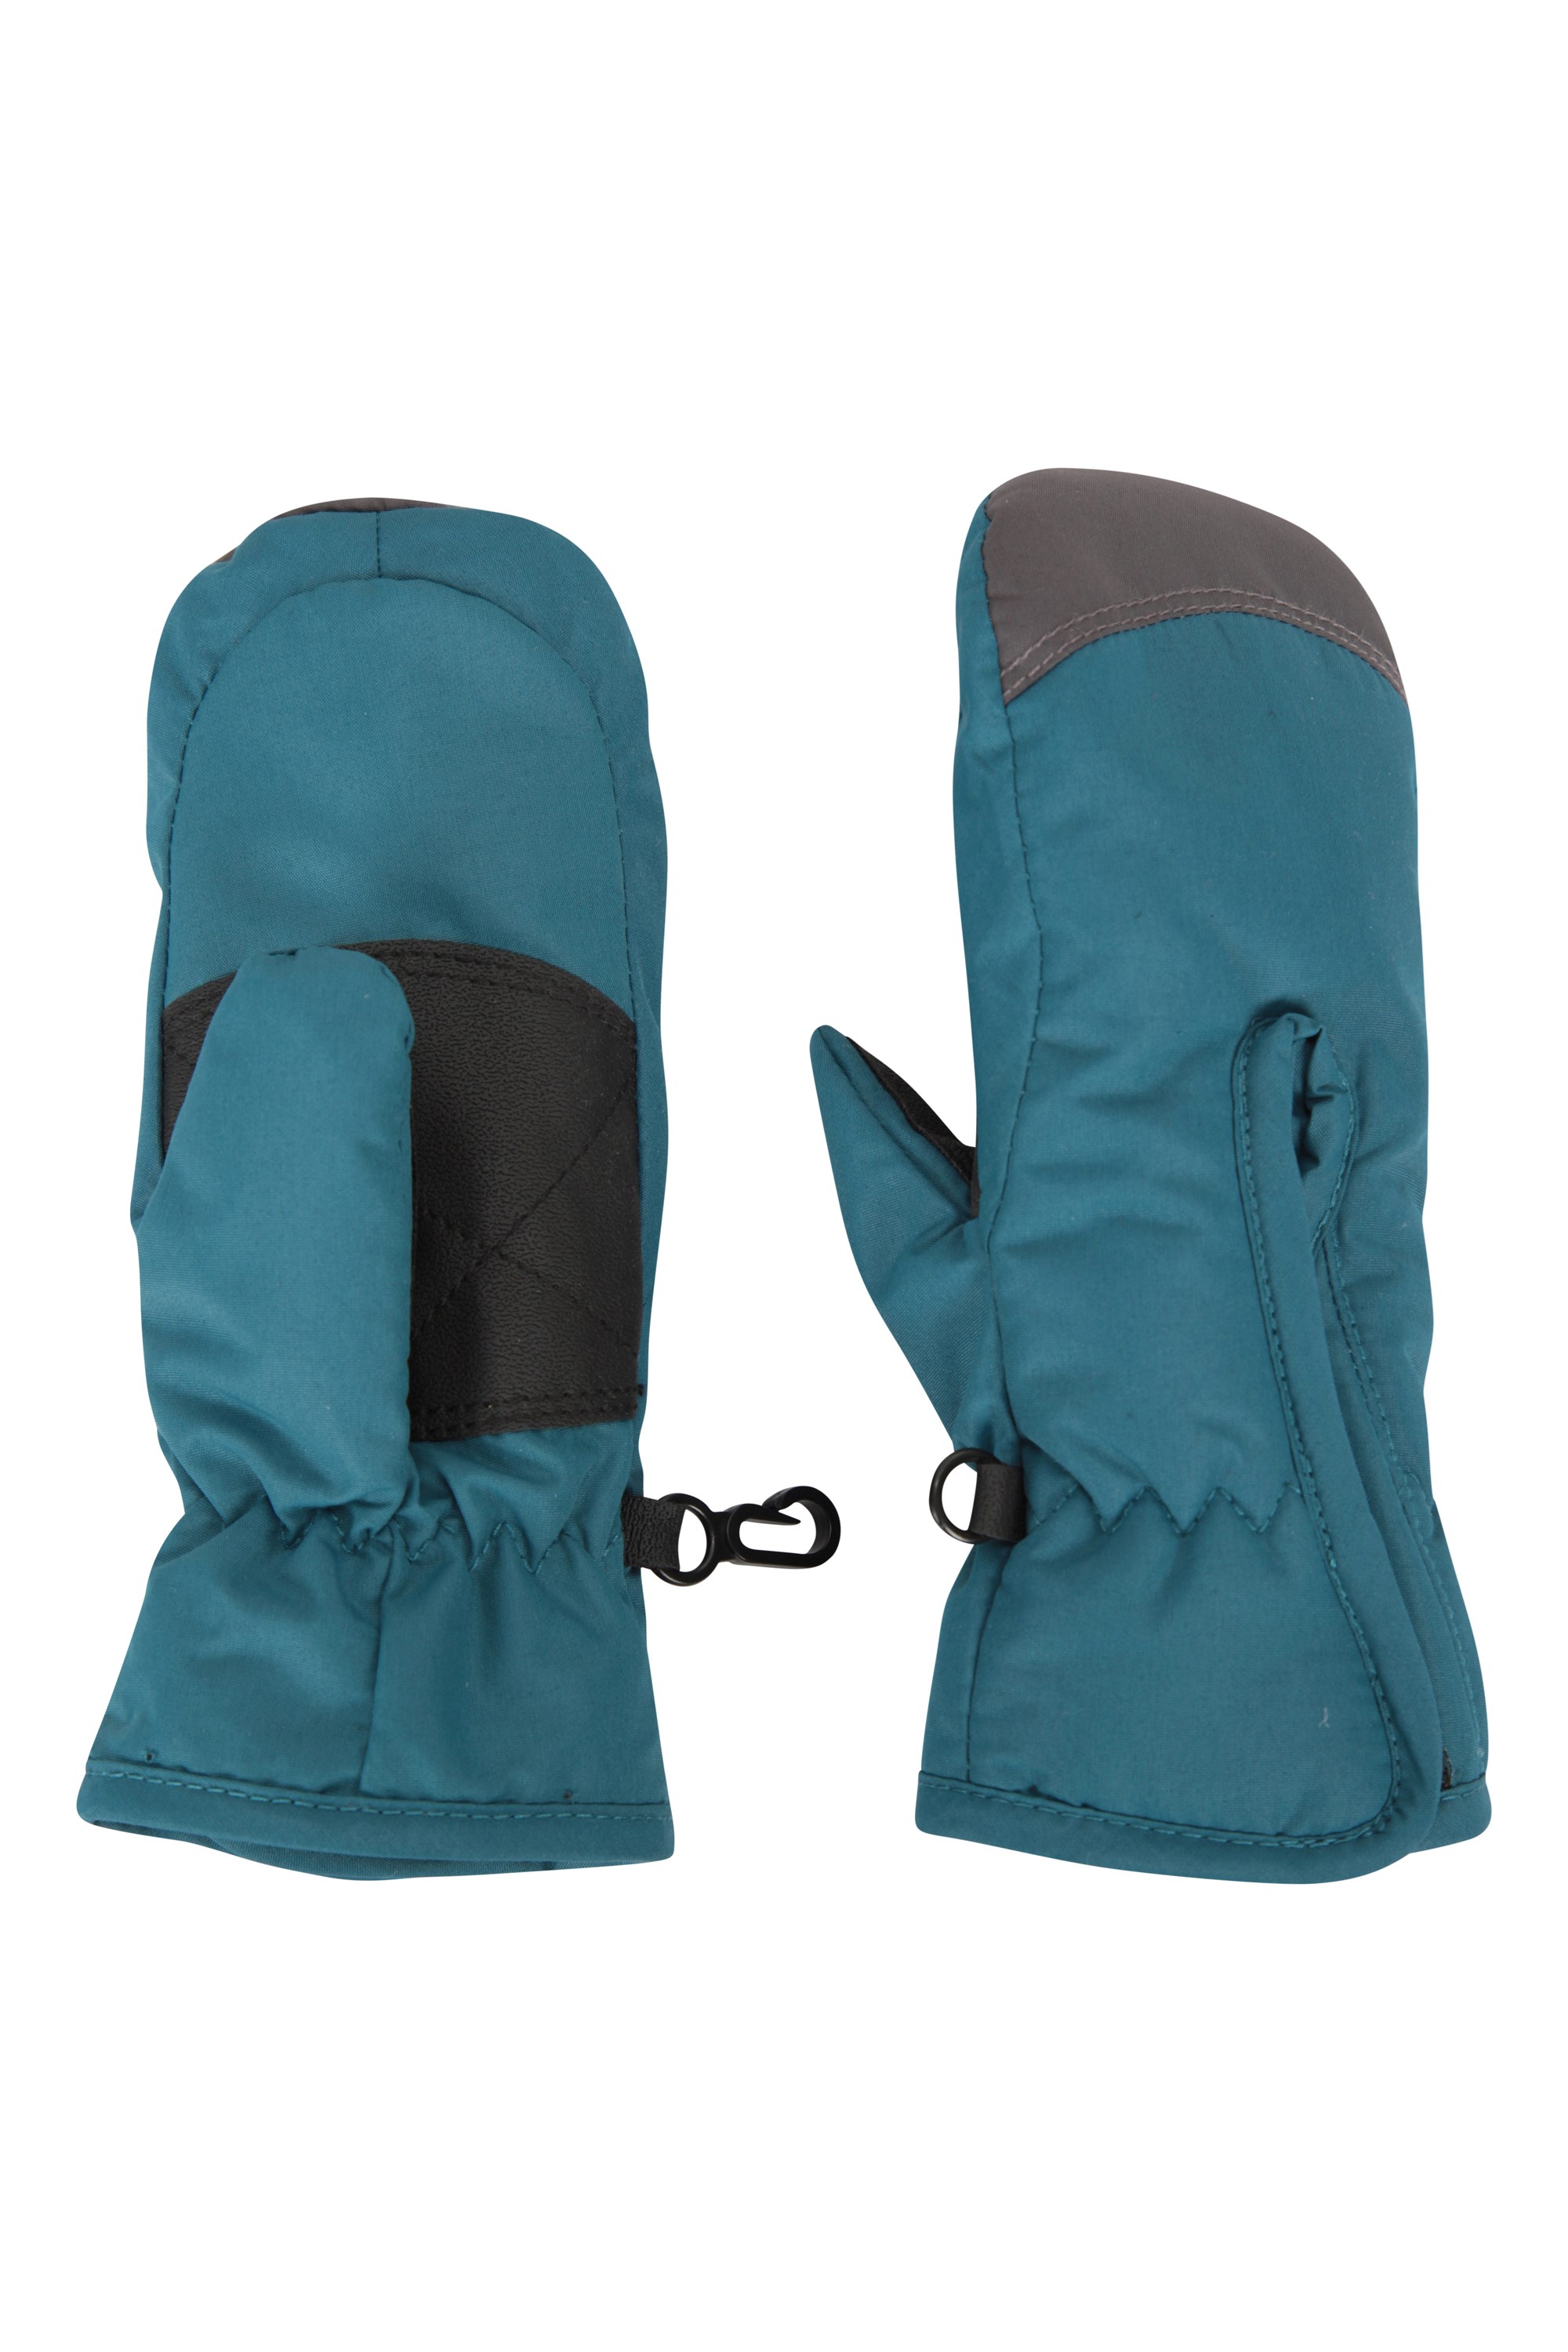 Size M. Blue Mountain Warehouse Mountain Warehouse Boy's Ski Gloves 